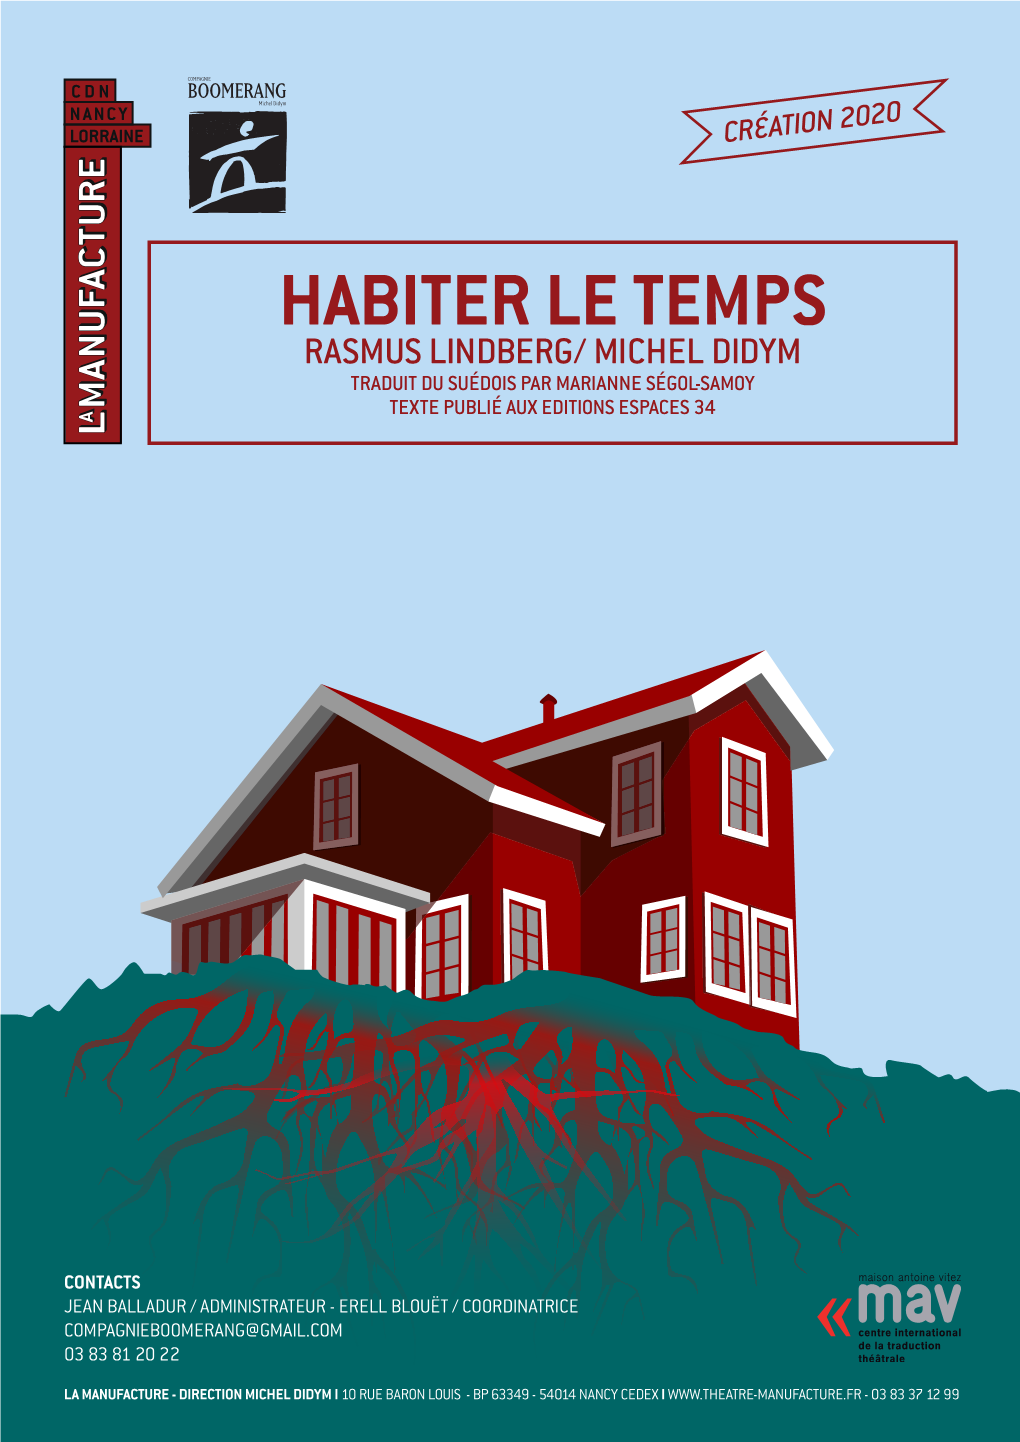 Habiter Le Temps Rasmus Lindberg/ Michel Didym Traduit Du Suédois Par Marianne Ségol-Samoy Texte Publié Aux Editions Espaces 34